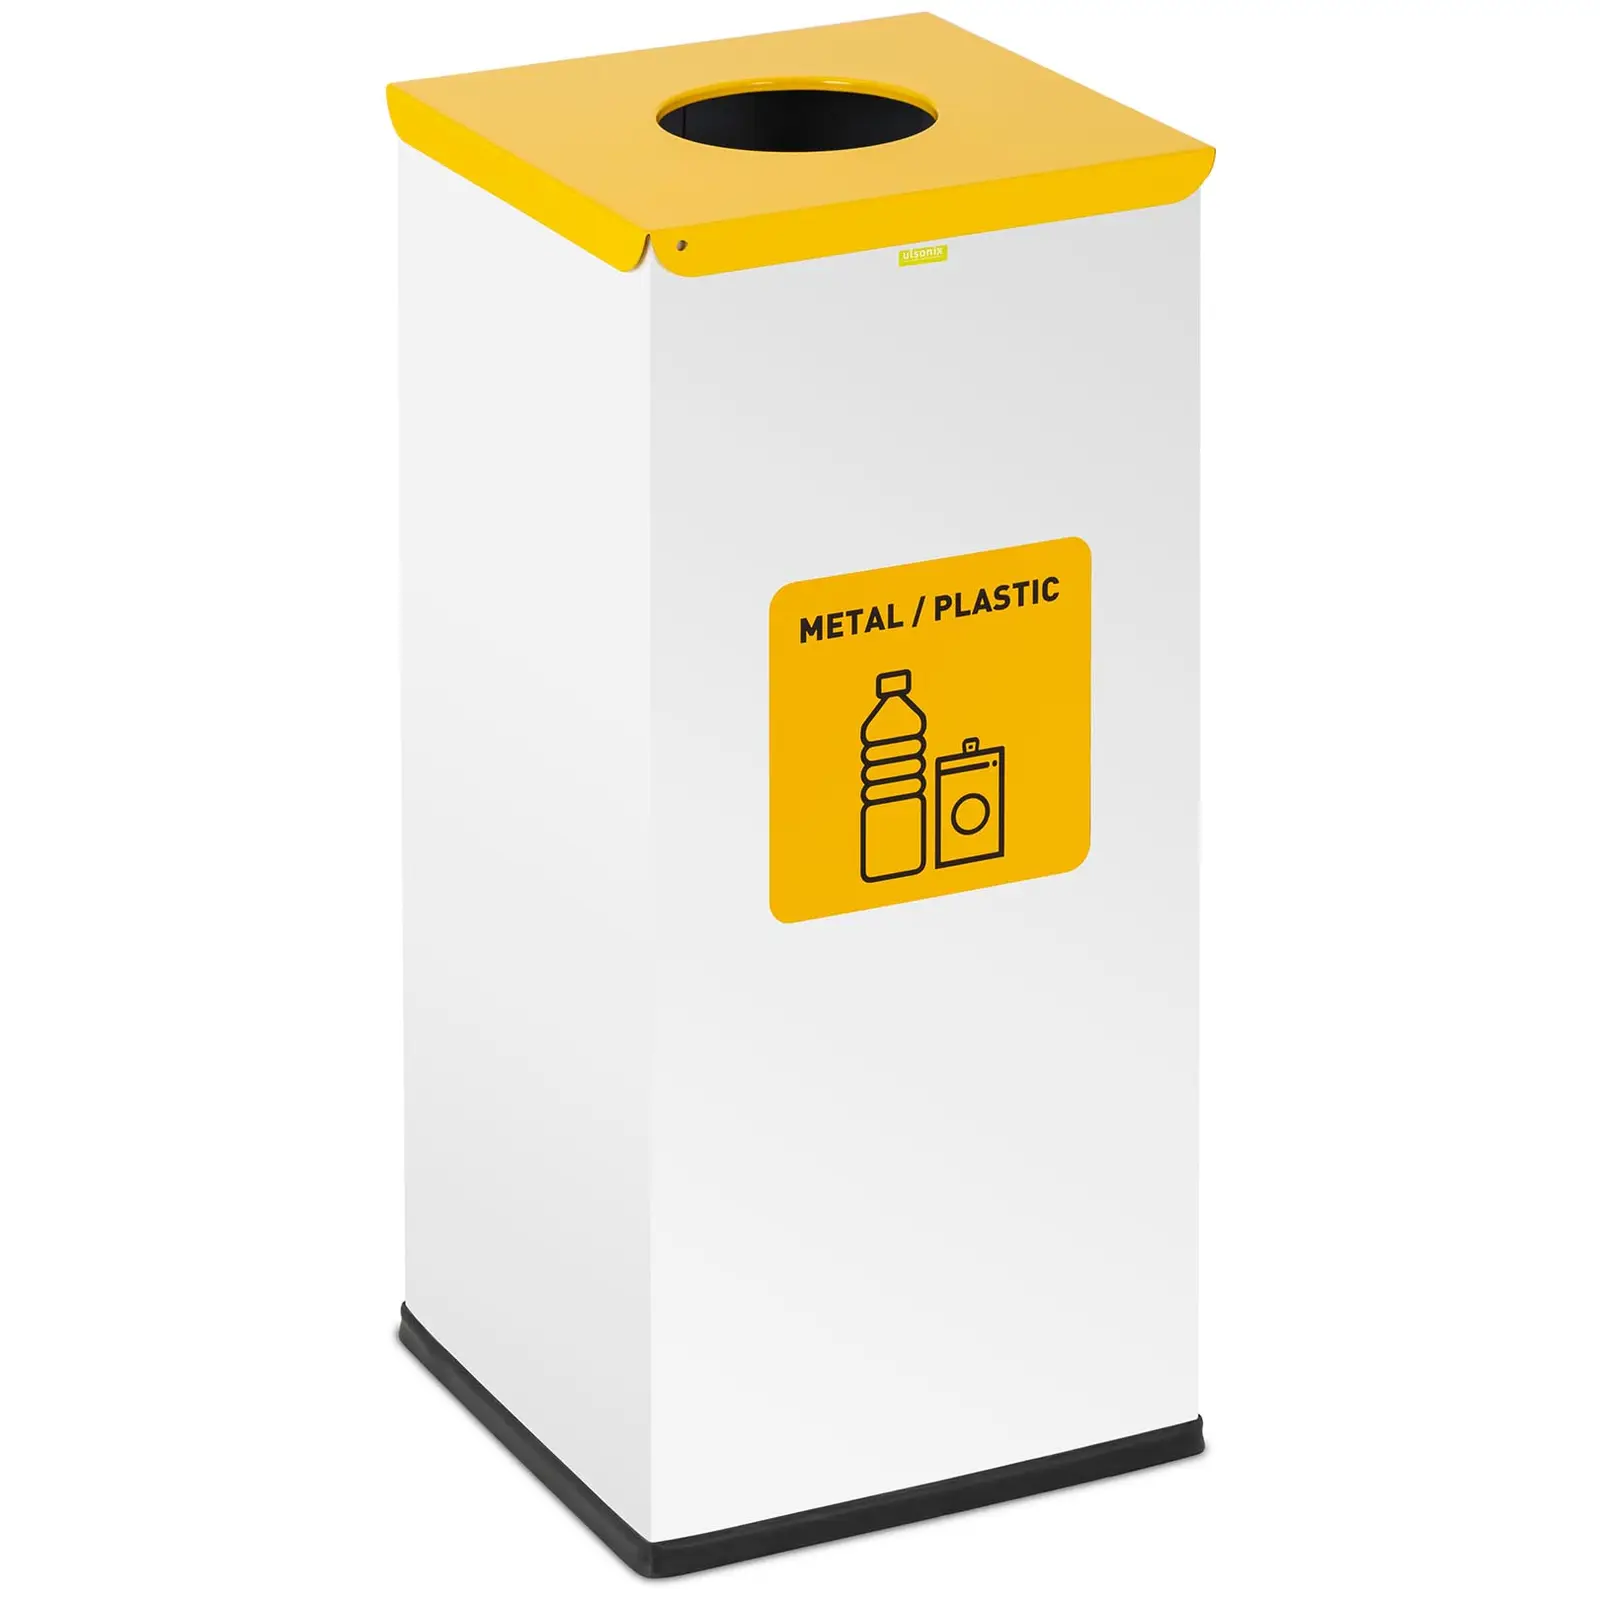 Caixote do lixo - 60 l - White - rótulo de materiais recicláveis